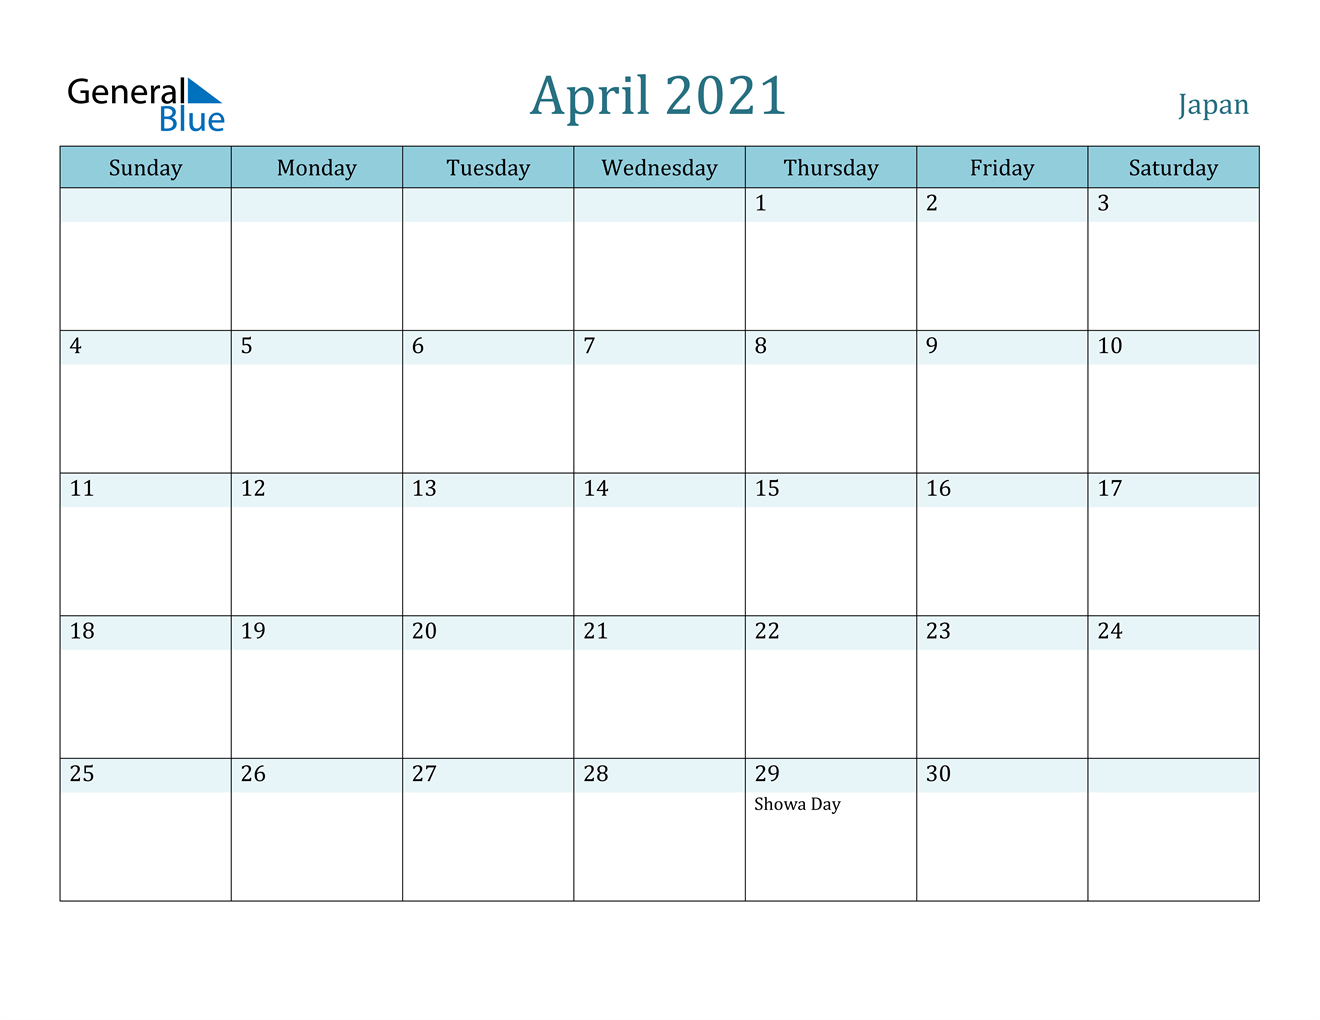 April 2021 Calendar - Japan